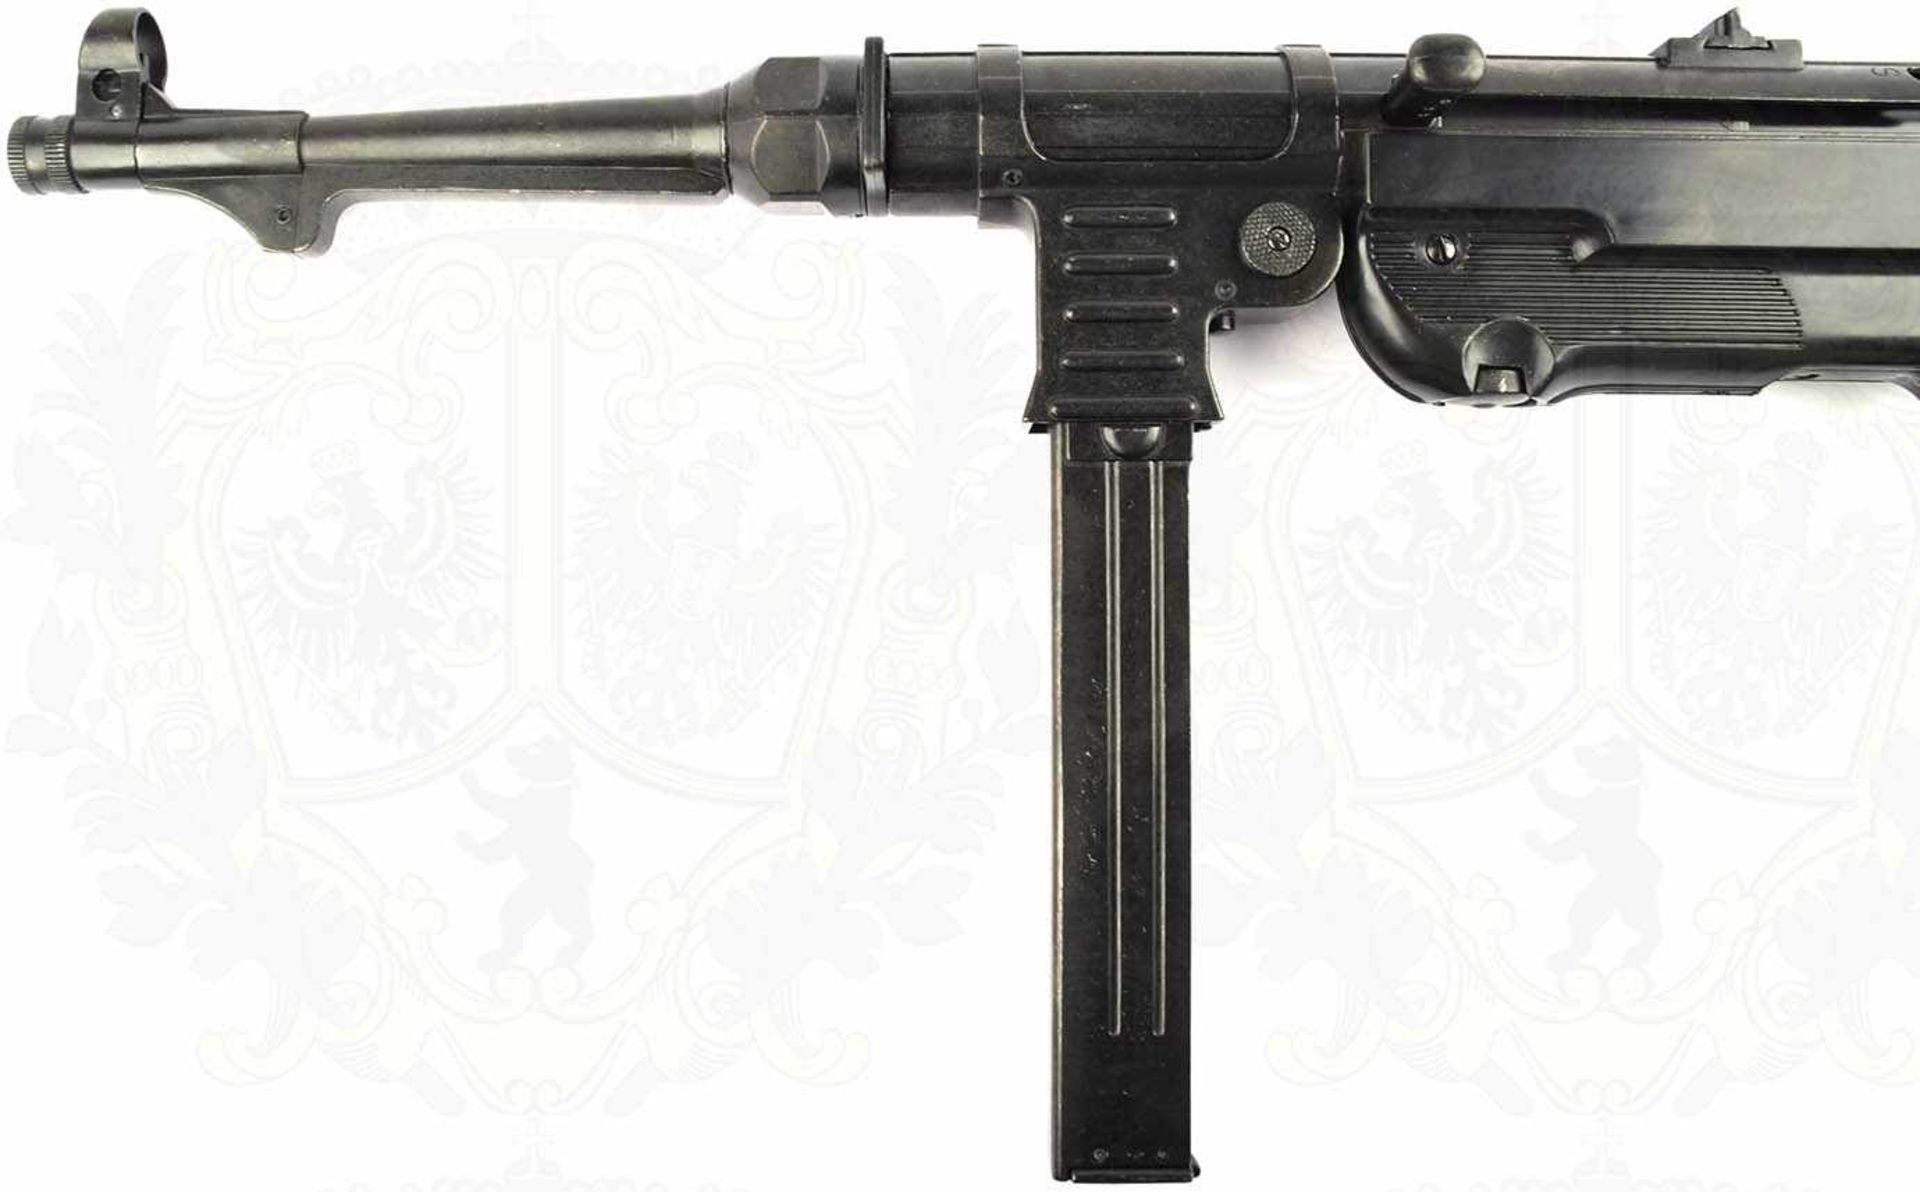 MASCHINENPISTOLE MP 40, brüniert/geschwärzt, Schaft u. Pistolengriff schwarzer Kunststoff, Spann- - Bild 2 aus 8